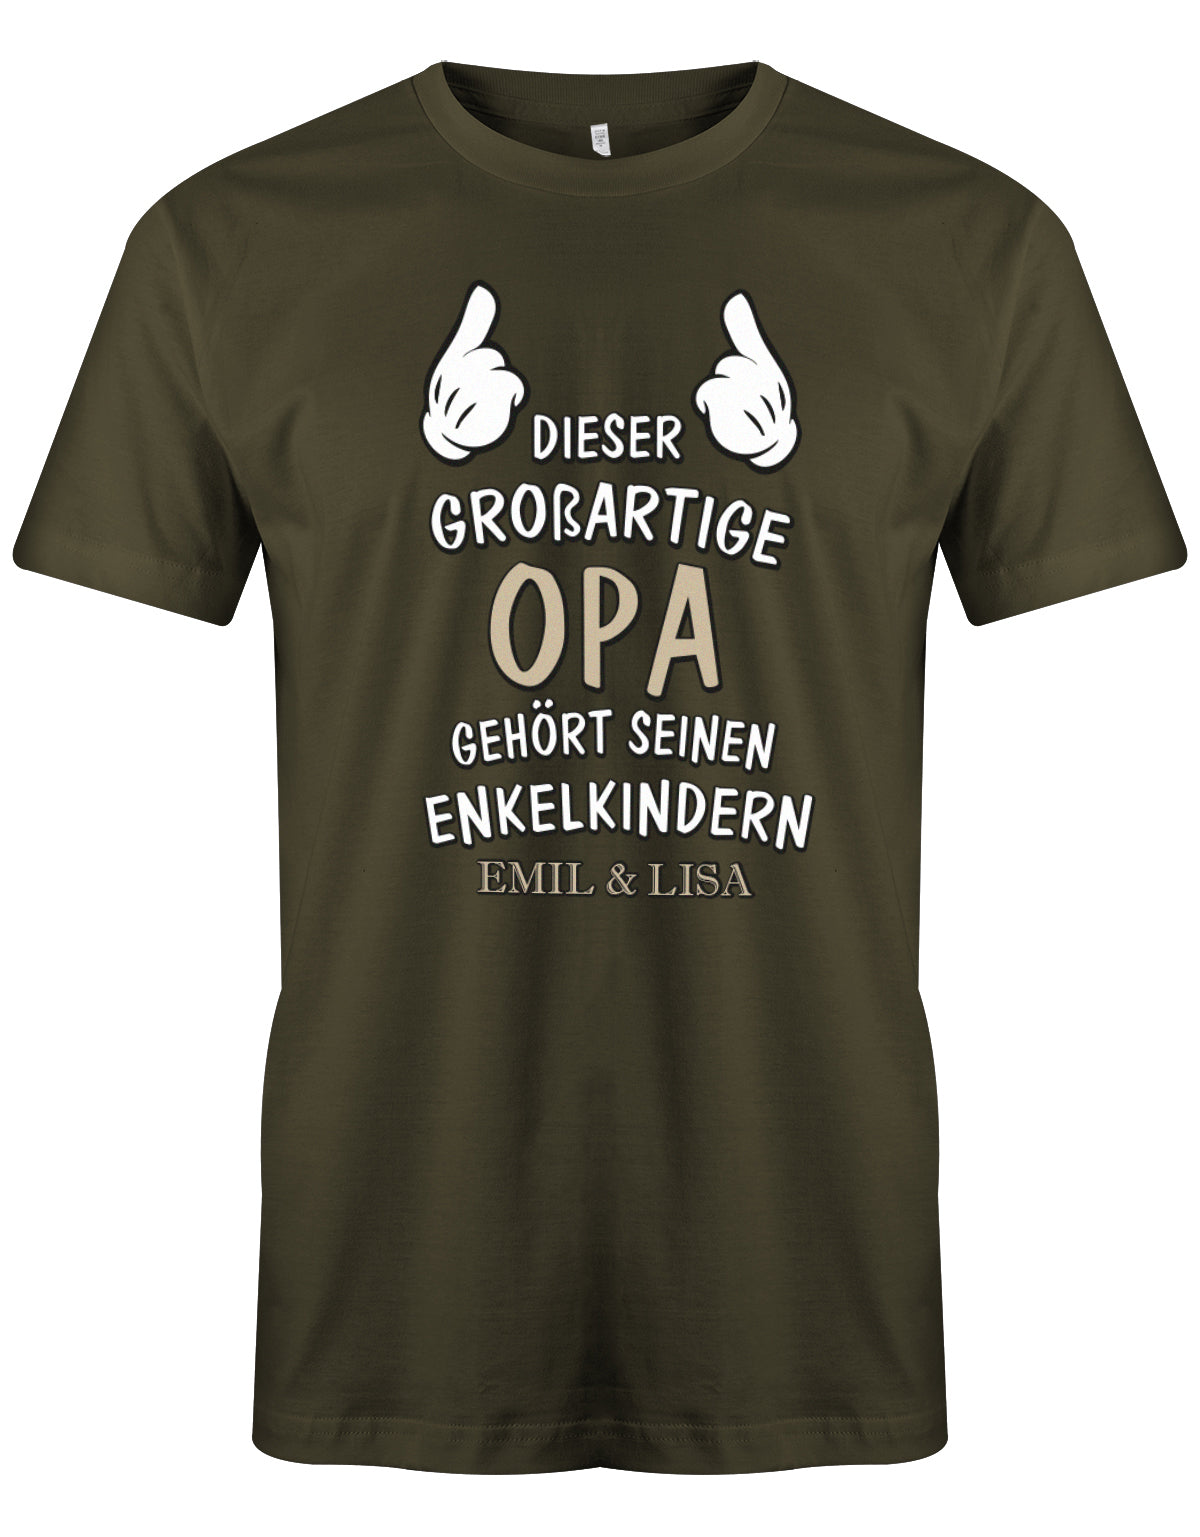 Opa Shirt personalisiert - Dieser großartige Opa gehört seinen Enkelkindern. Mit Namen der Enkel. Army